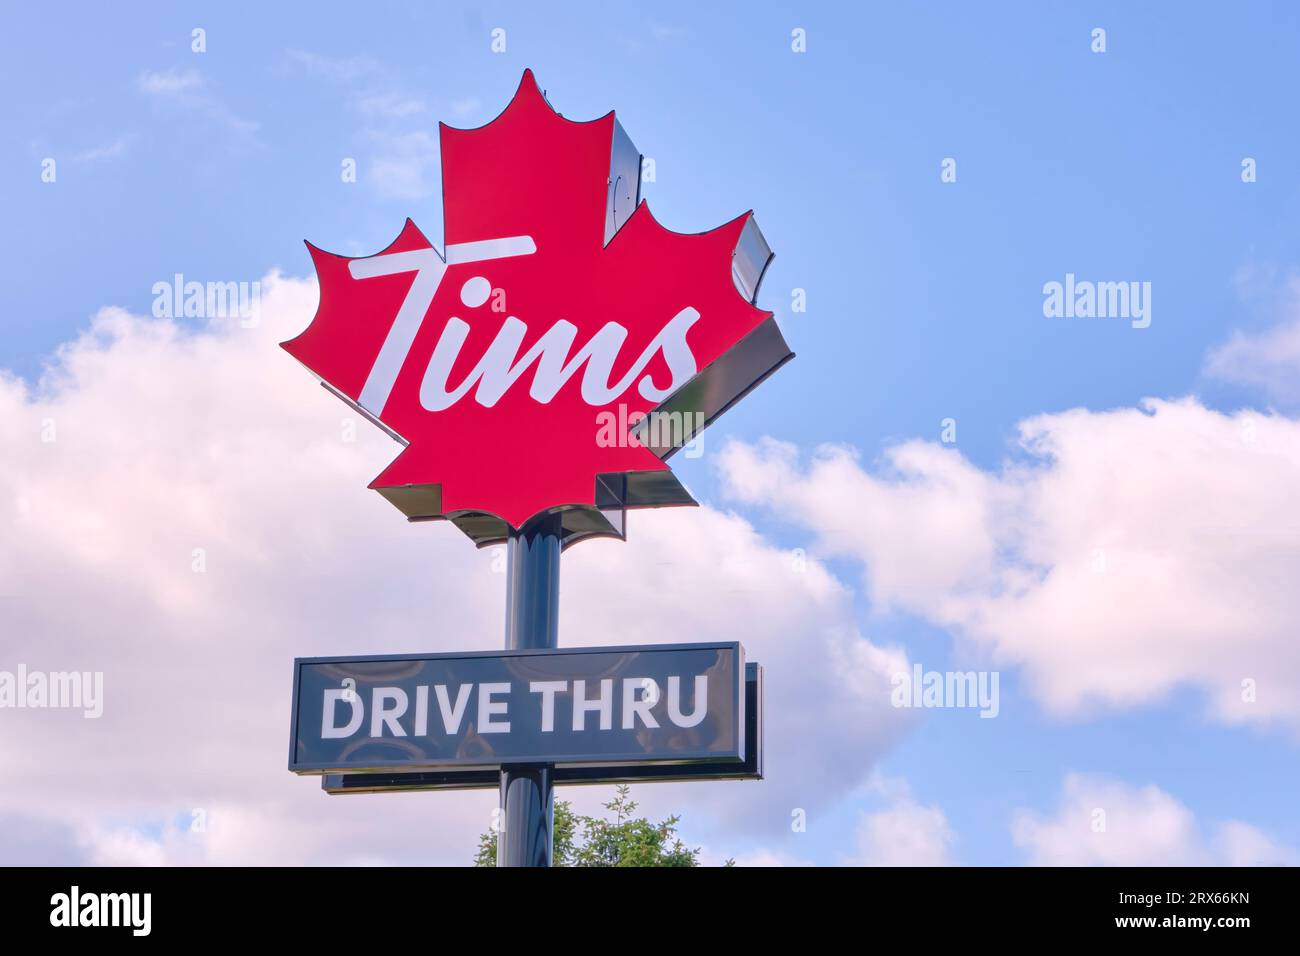 Die neueste Version des Tim Hortons-Schilds wurde vor einem blauen Himmel fotografiert. Stockfoto